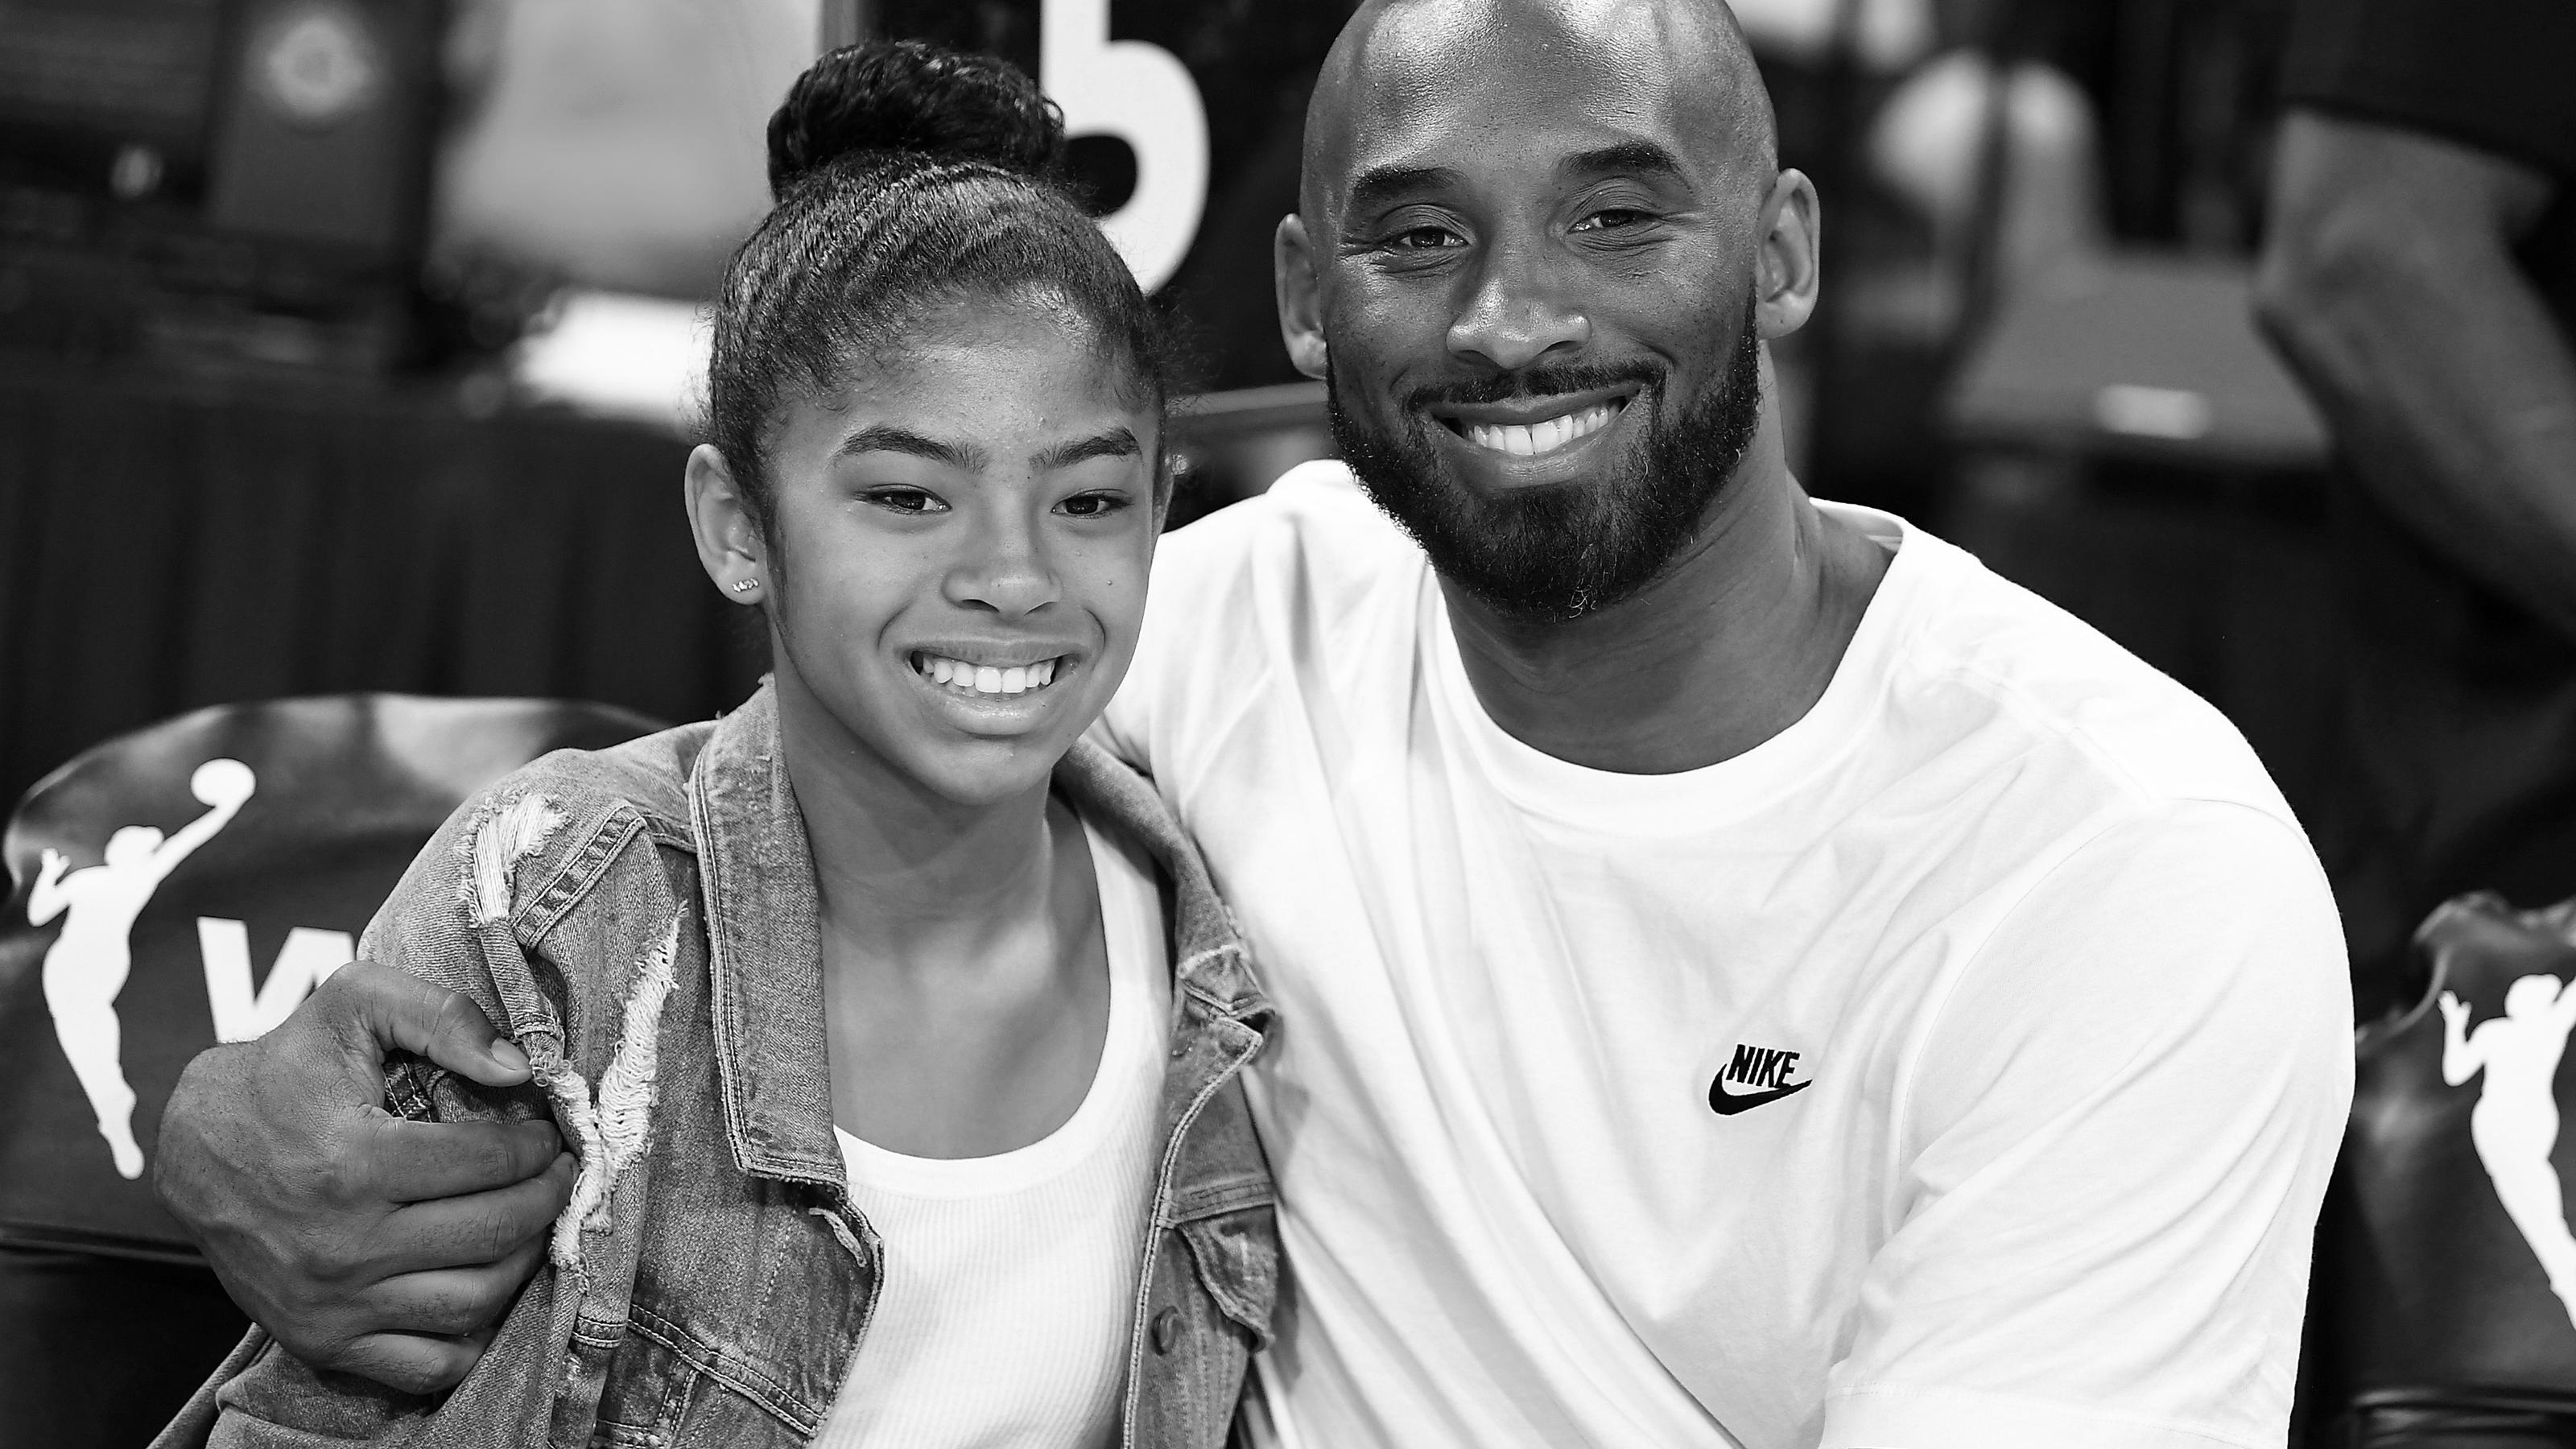 Der Basketball-Profi Kobe Bryant und seine Tochter Gianna (2006-2020) kamen im Januar 2020 bei einem Hubschrauberabsturz ums Leben.